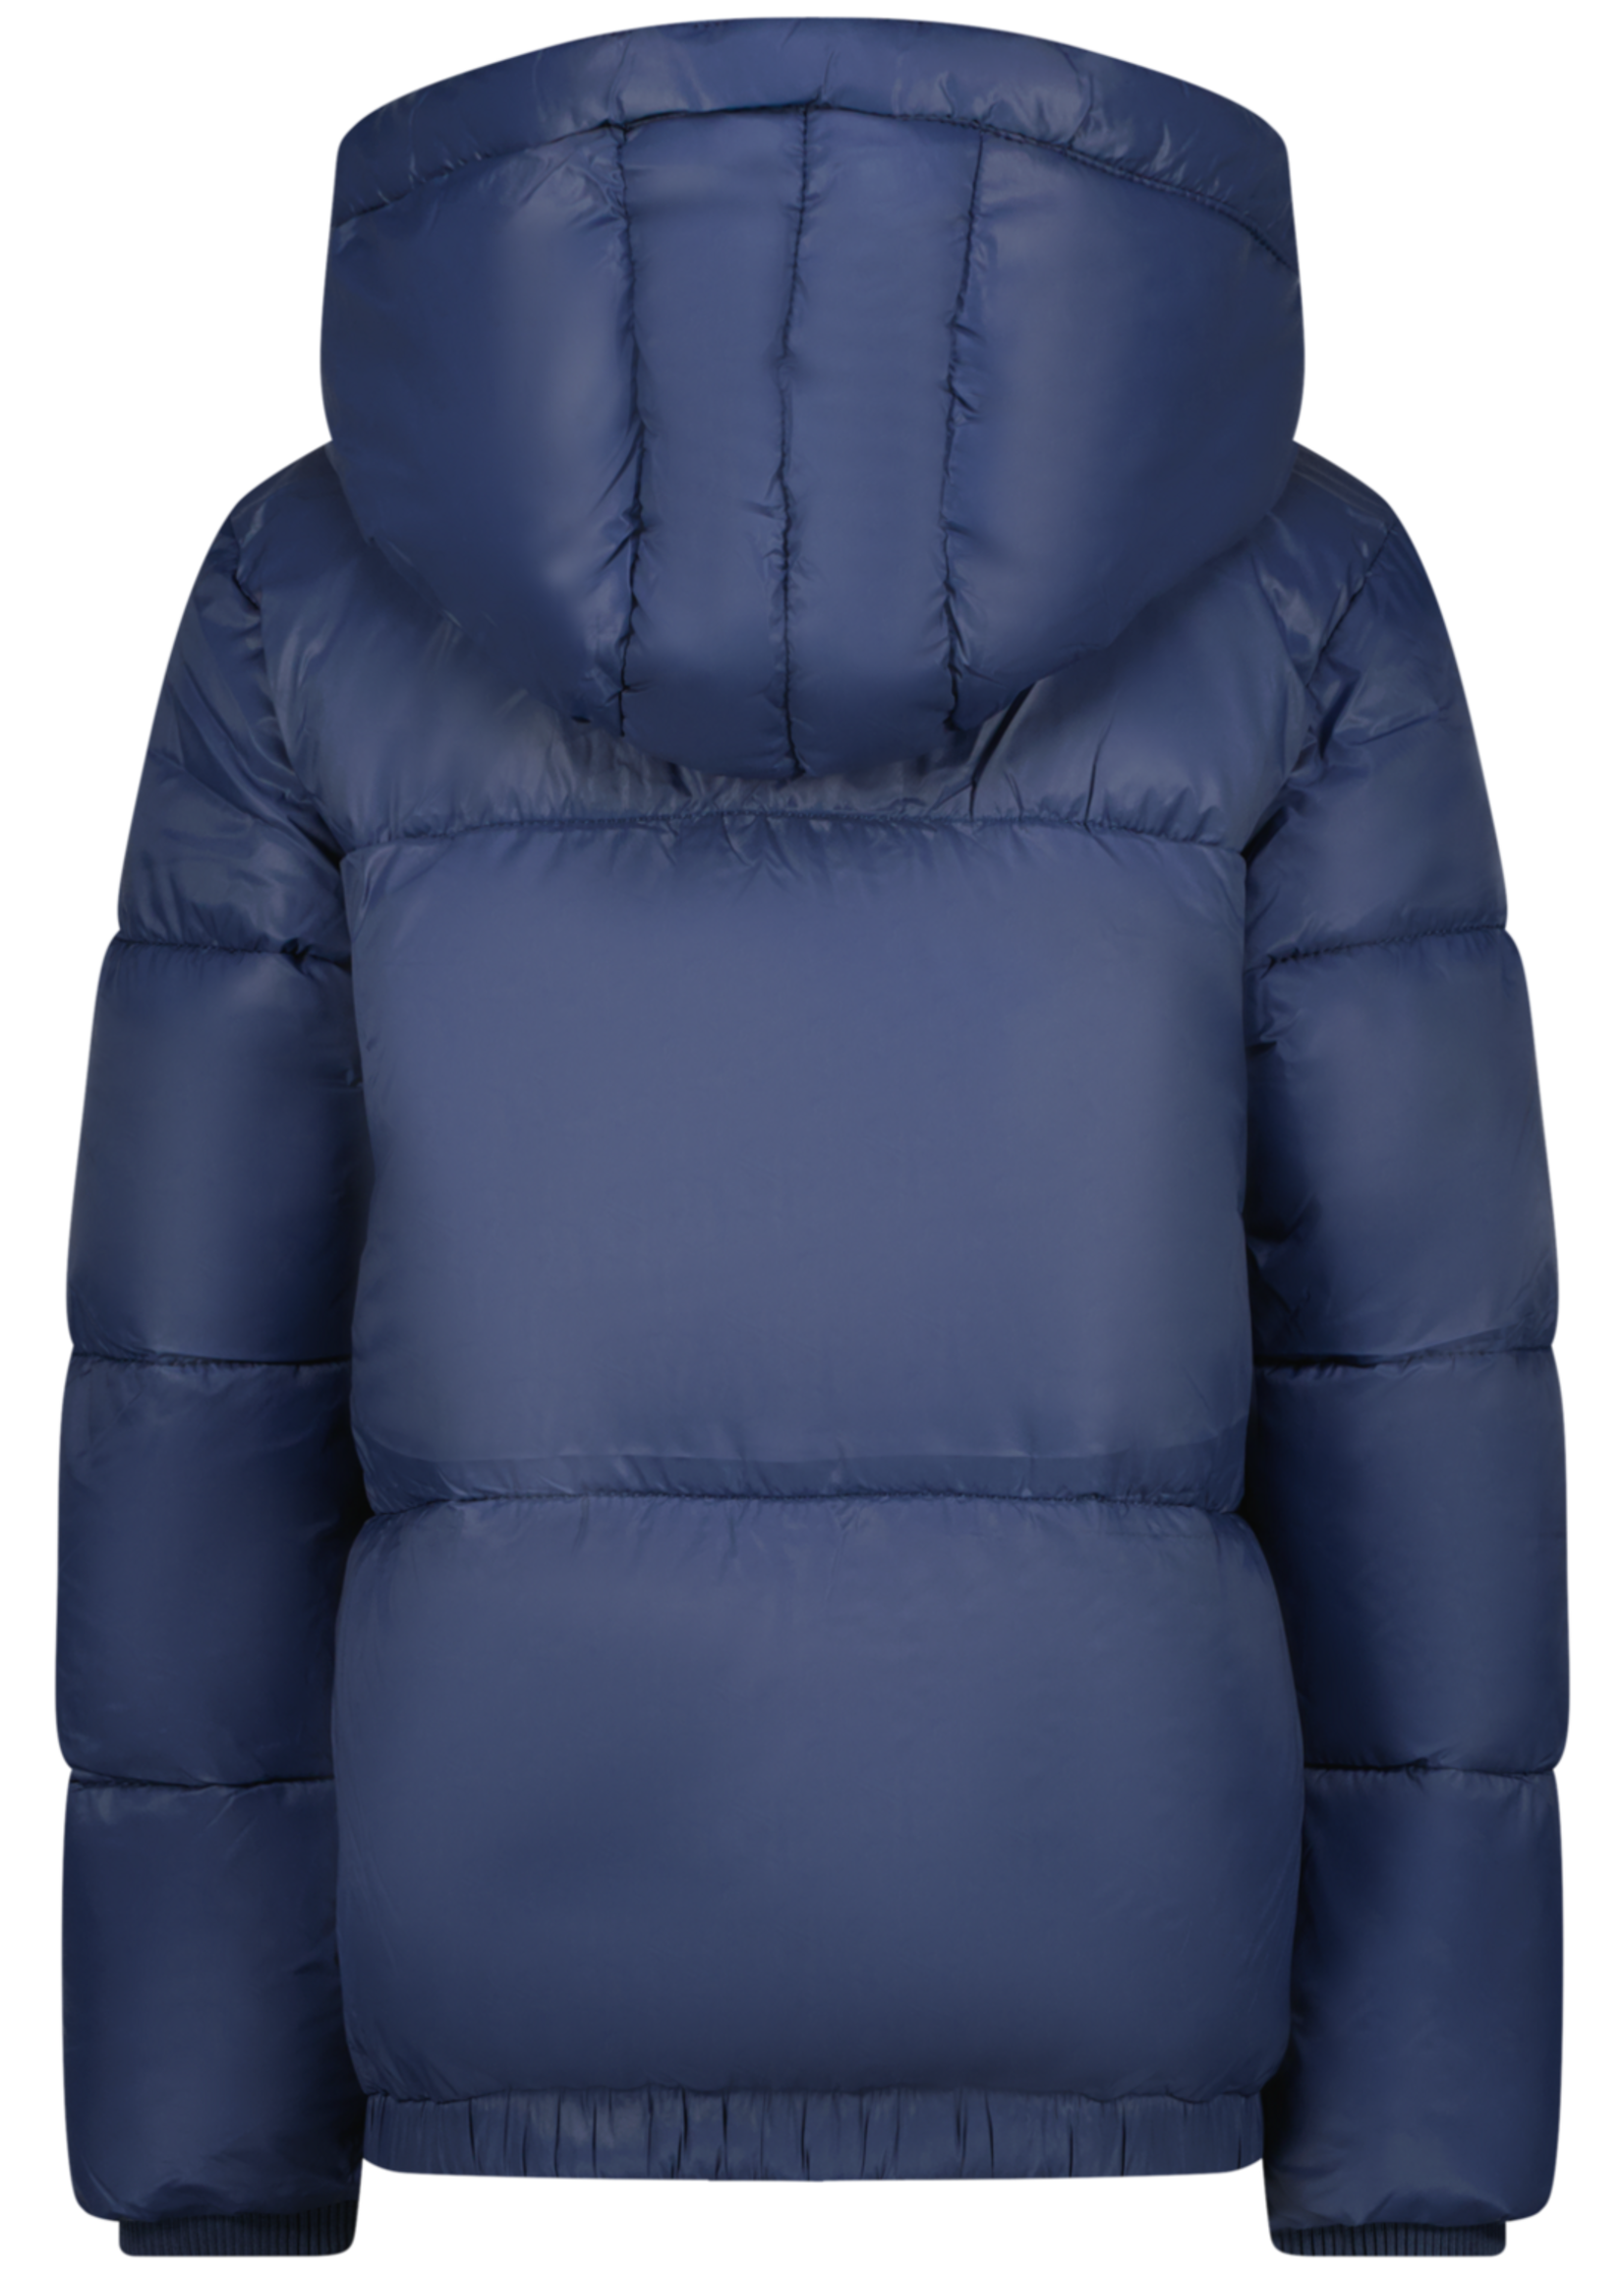 Lima jacket - Blue indigo